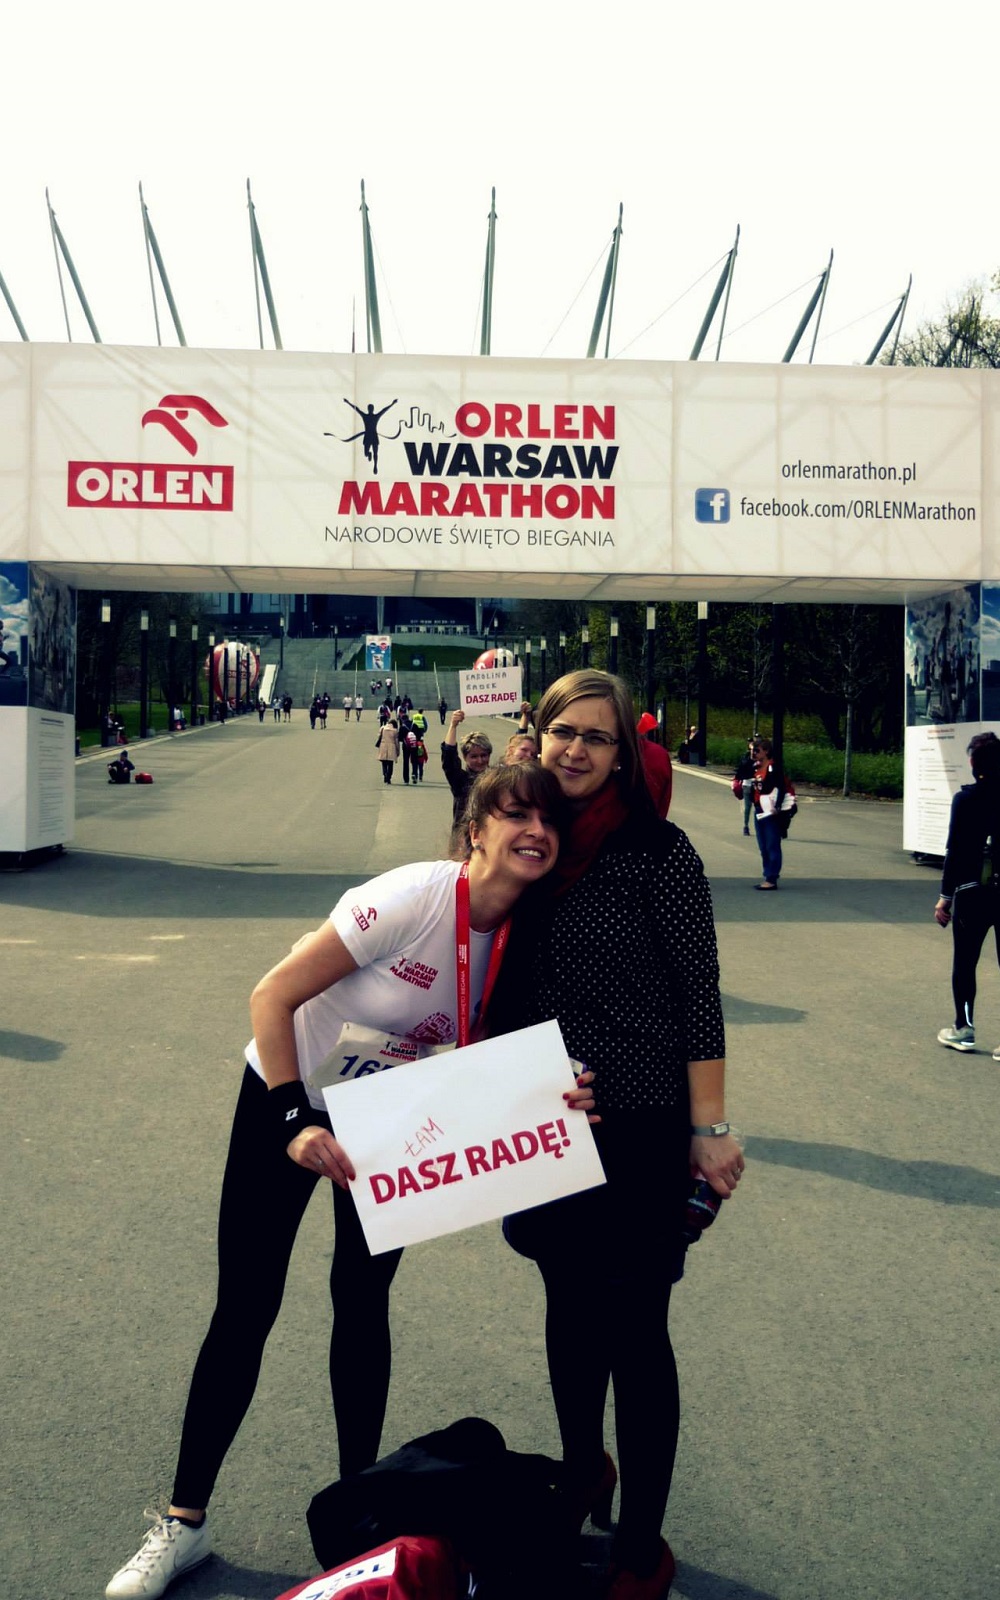 Orlen Warsaw Marathon - przeżyłam, a na mecie czekał mój wierny kibic - najstarsza siostra Ania